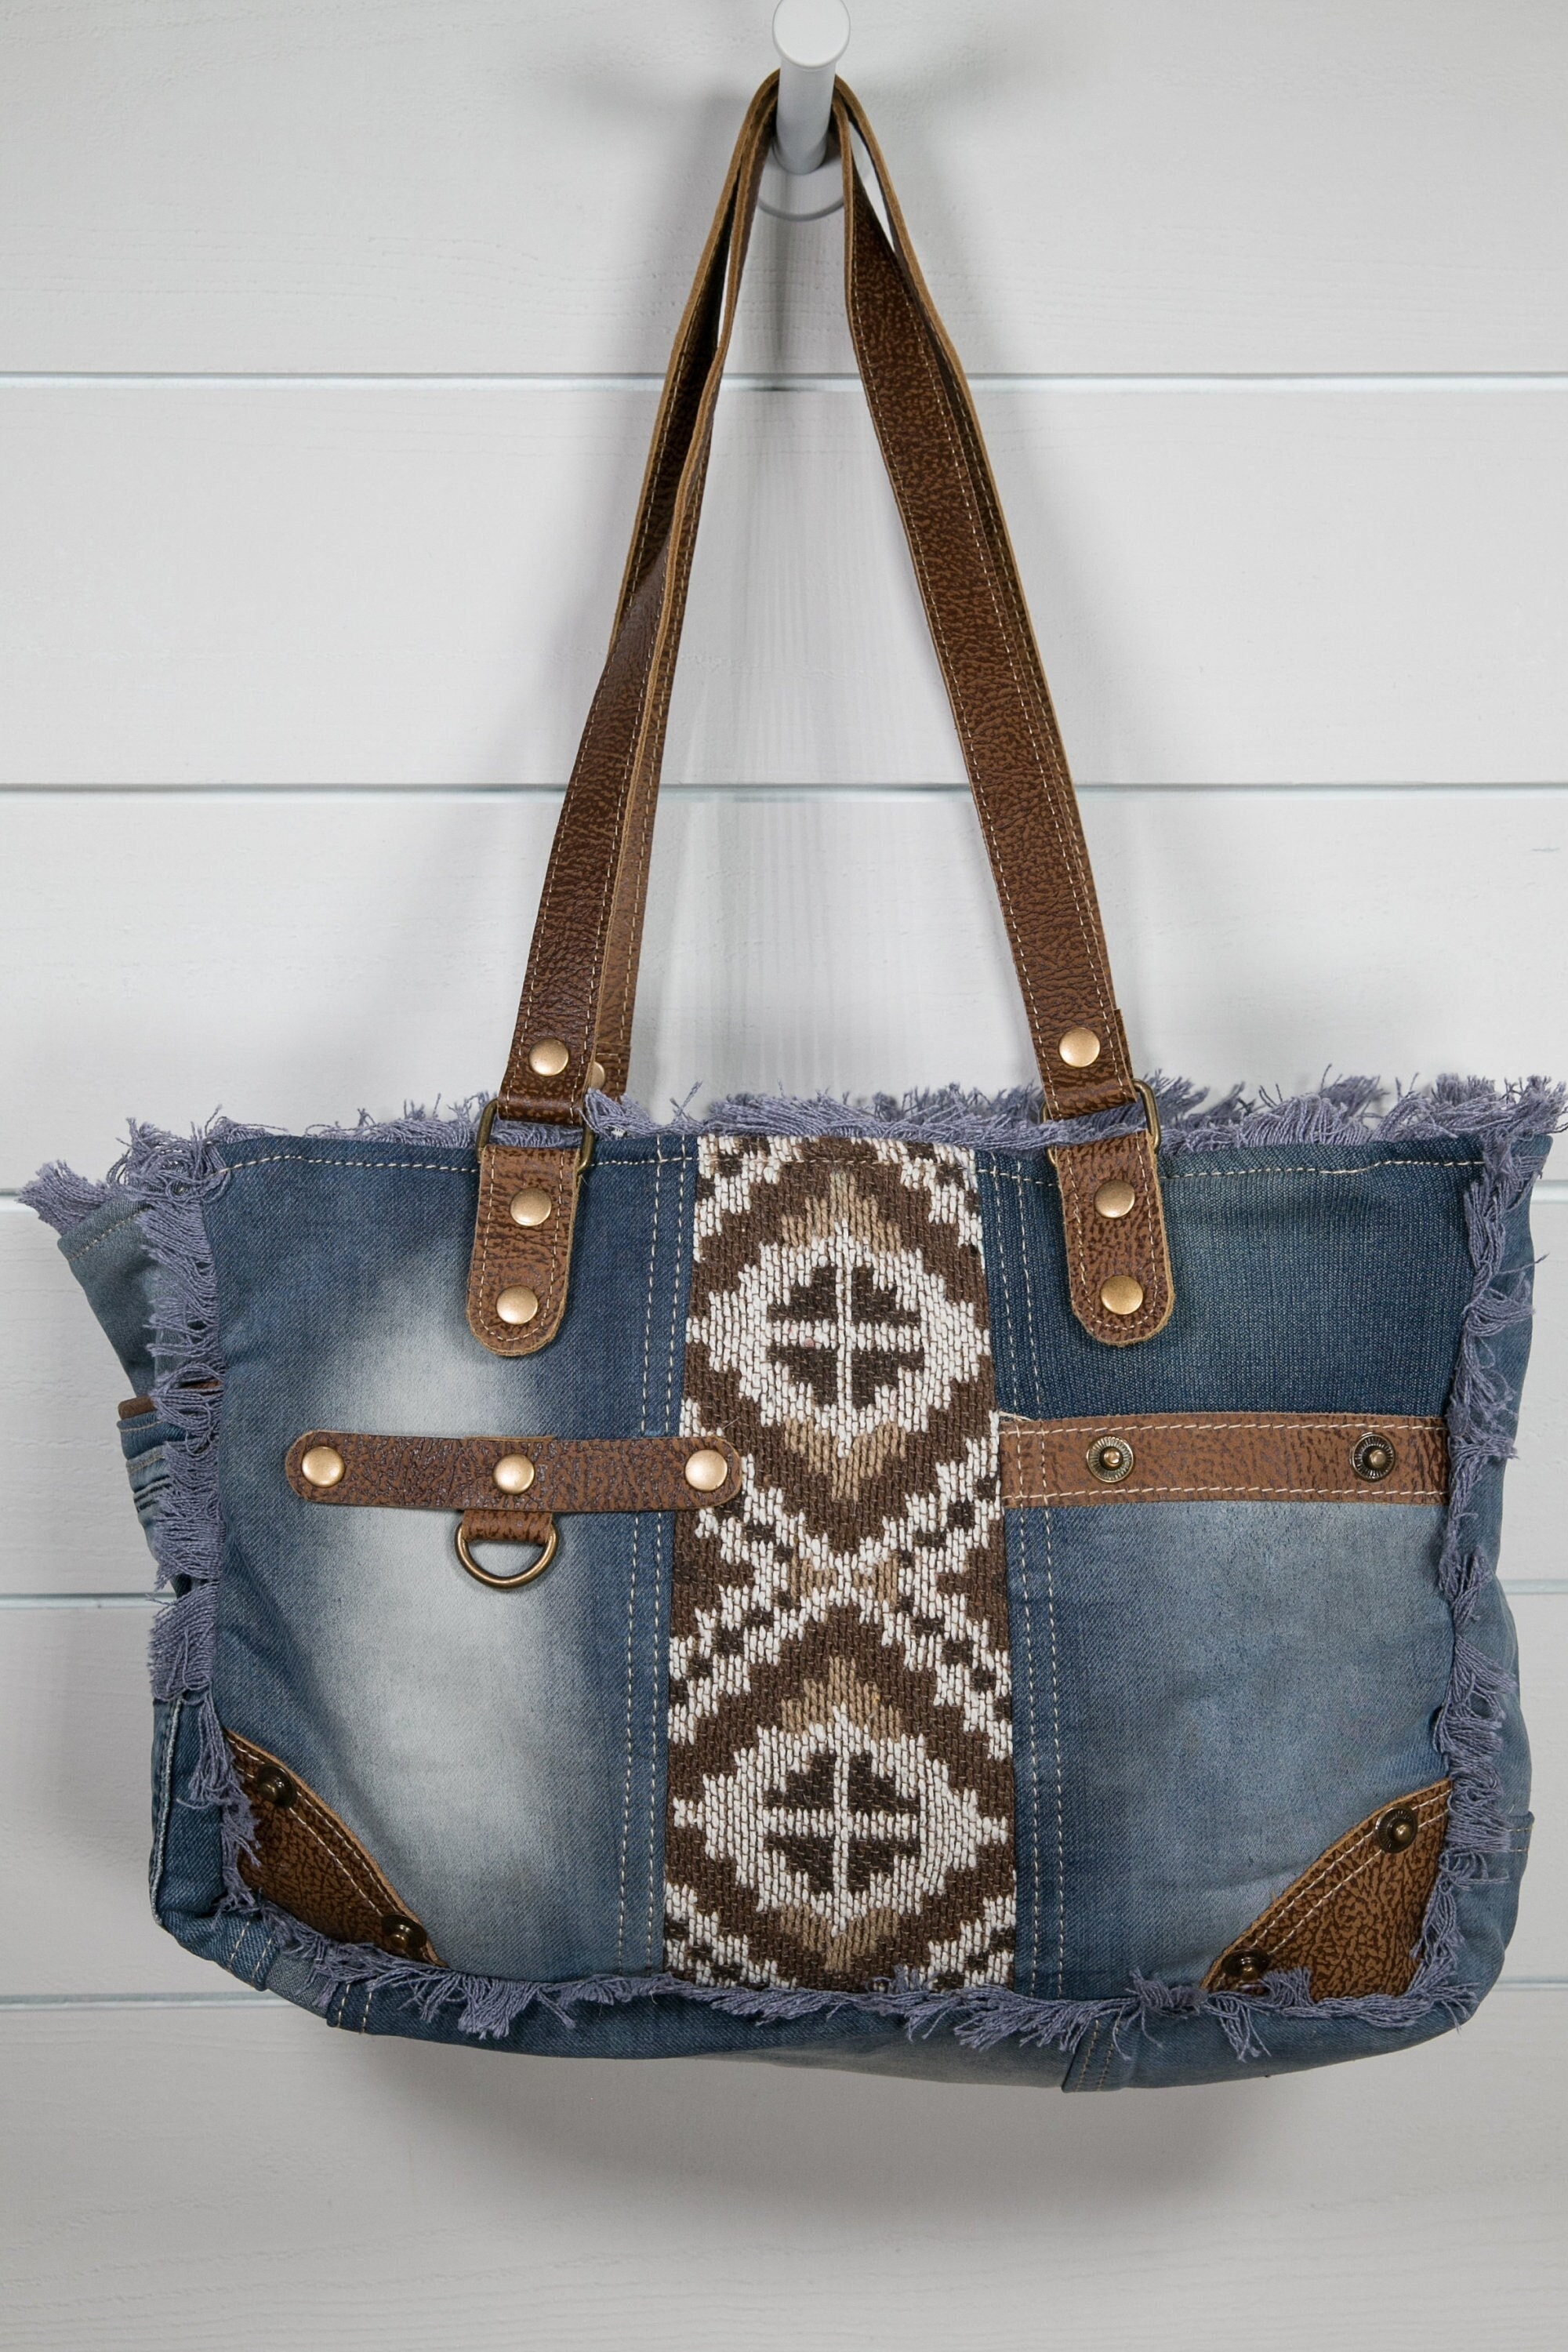 Myra Bag Upcycled Denim Tote Bag / Shoulder Purse Leather - Etsy